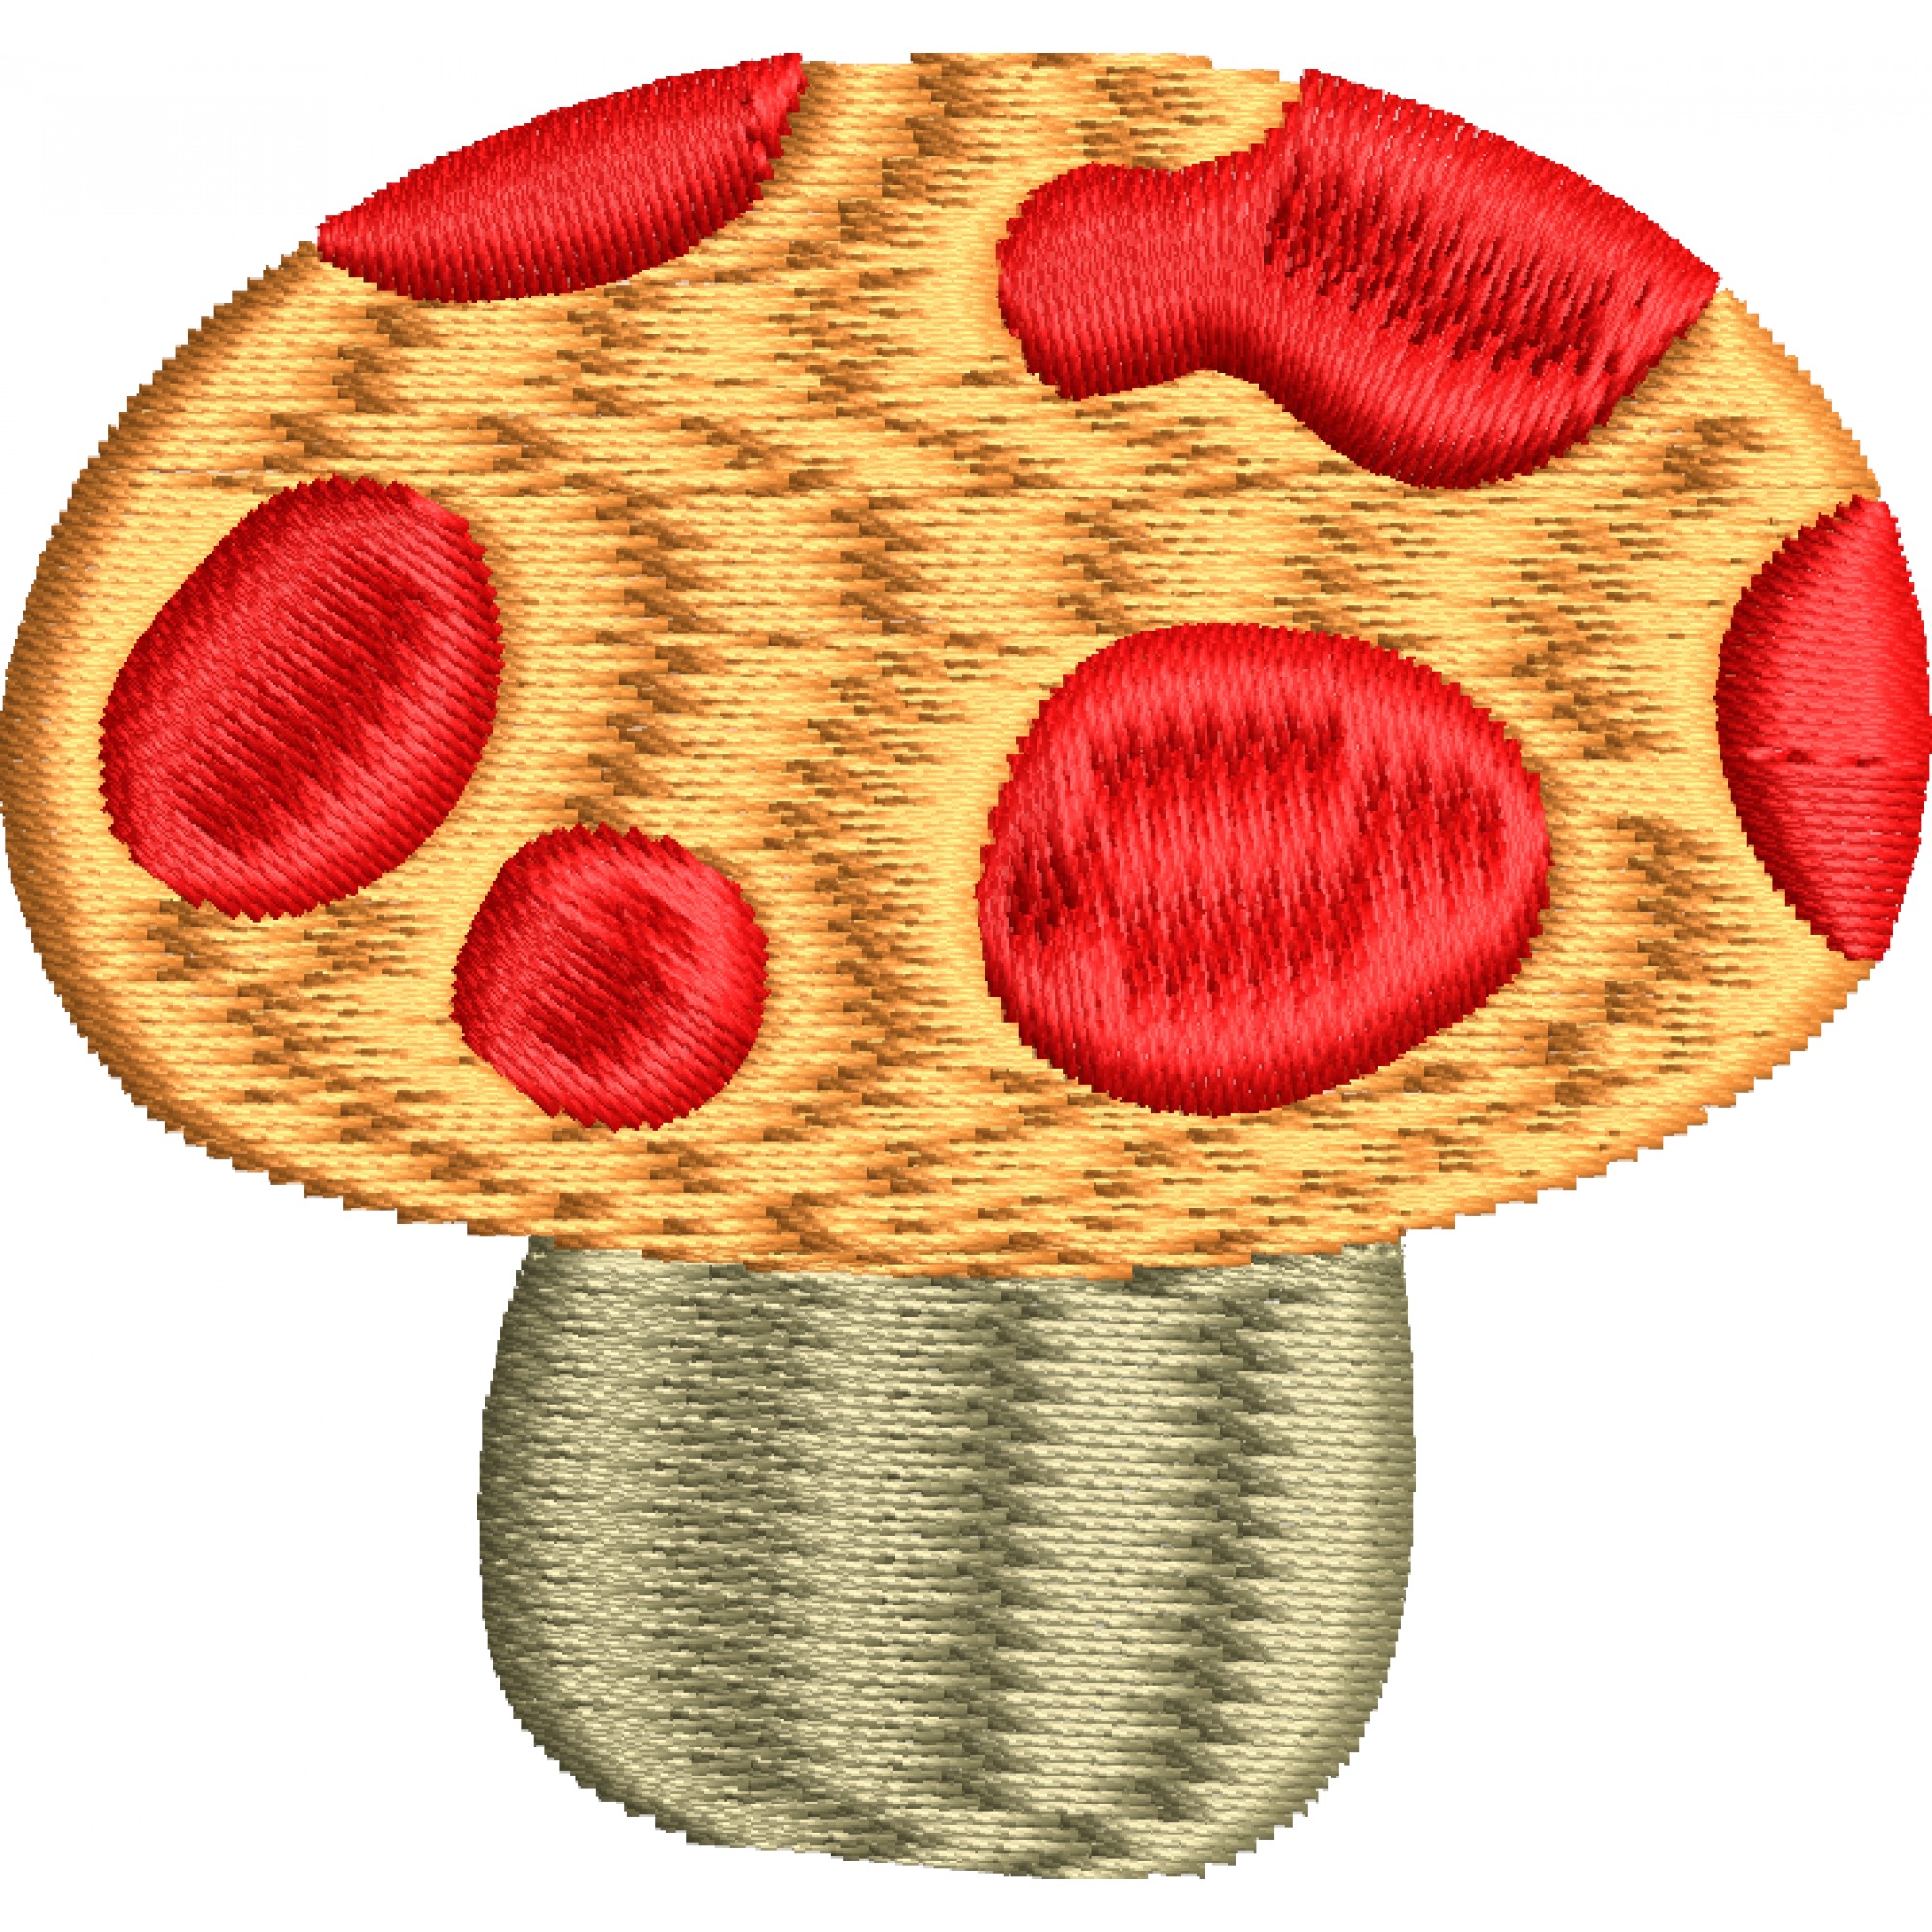 Mushroom embroidery design